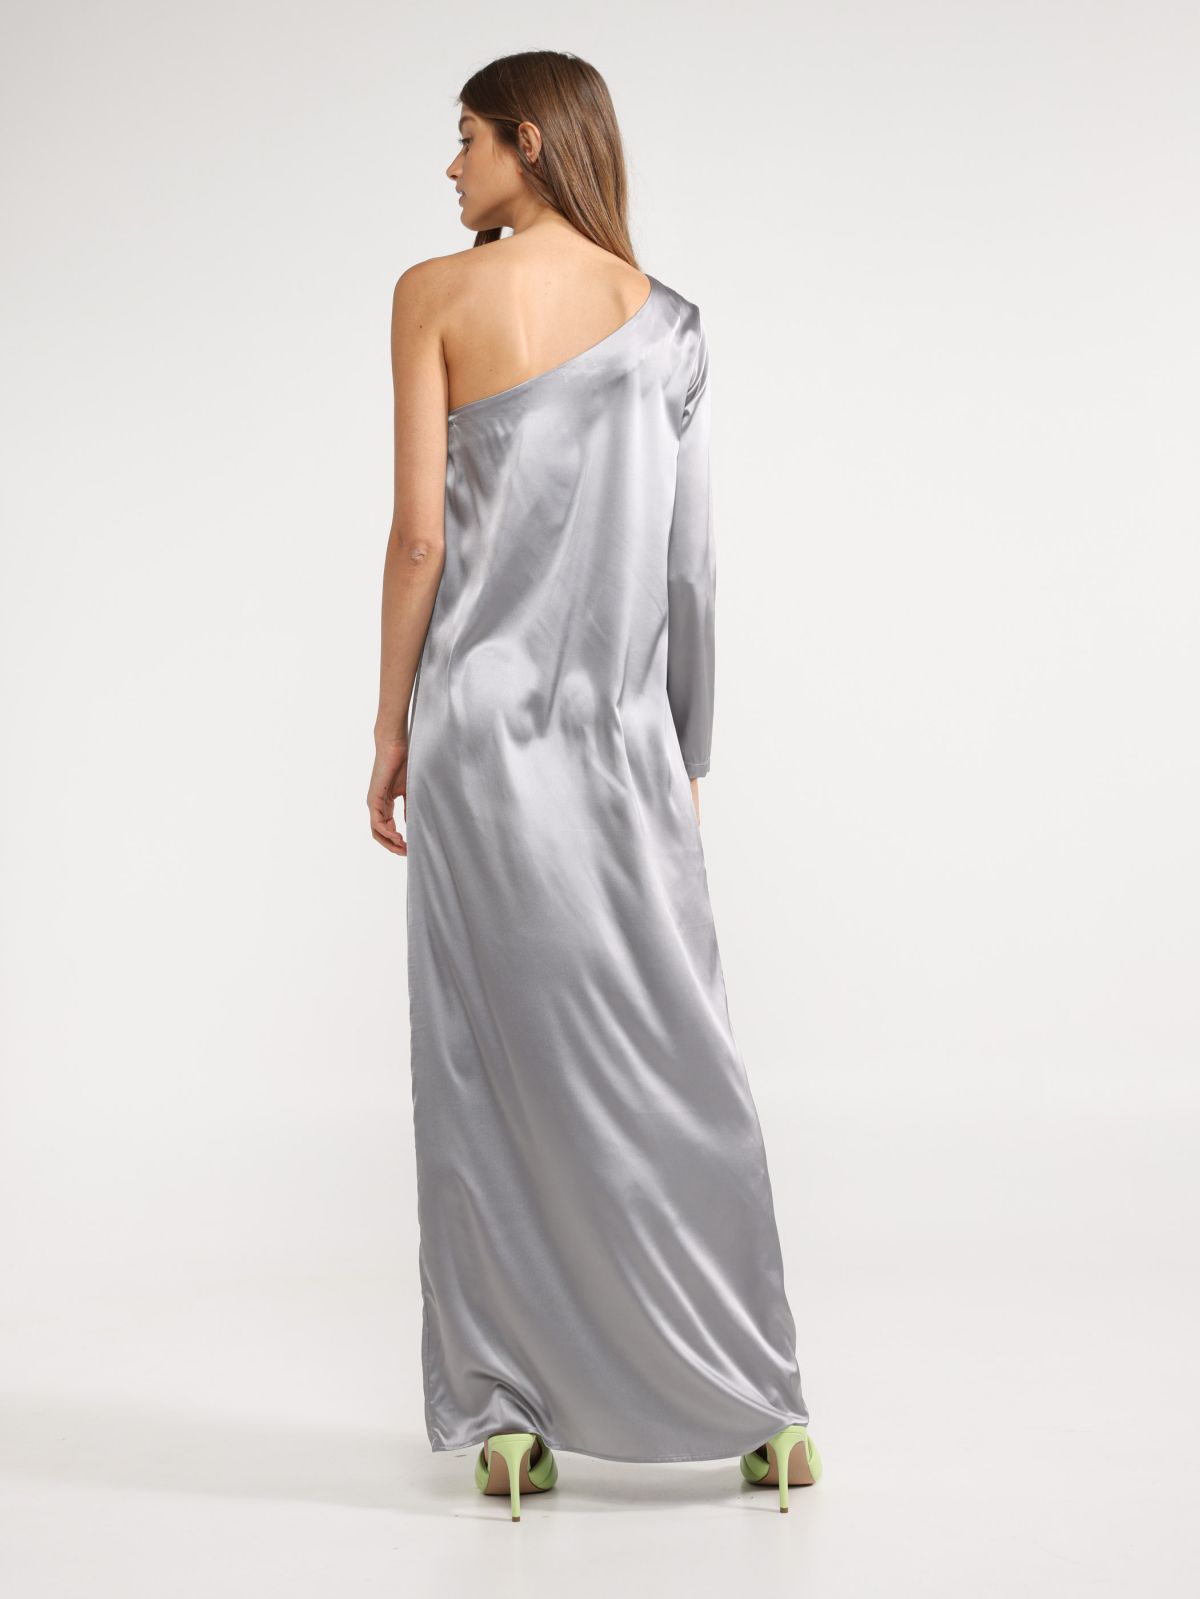  שמלת מקסי ואן שולדר של TERMINAL X